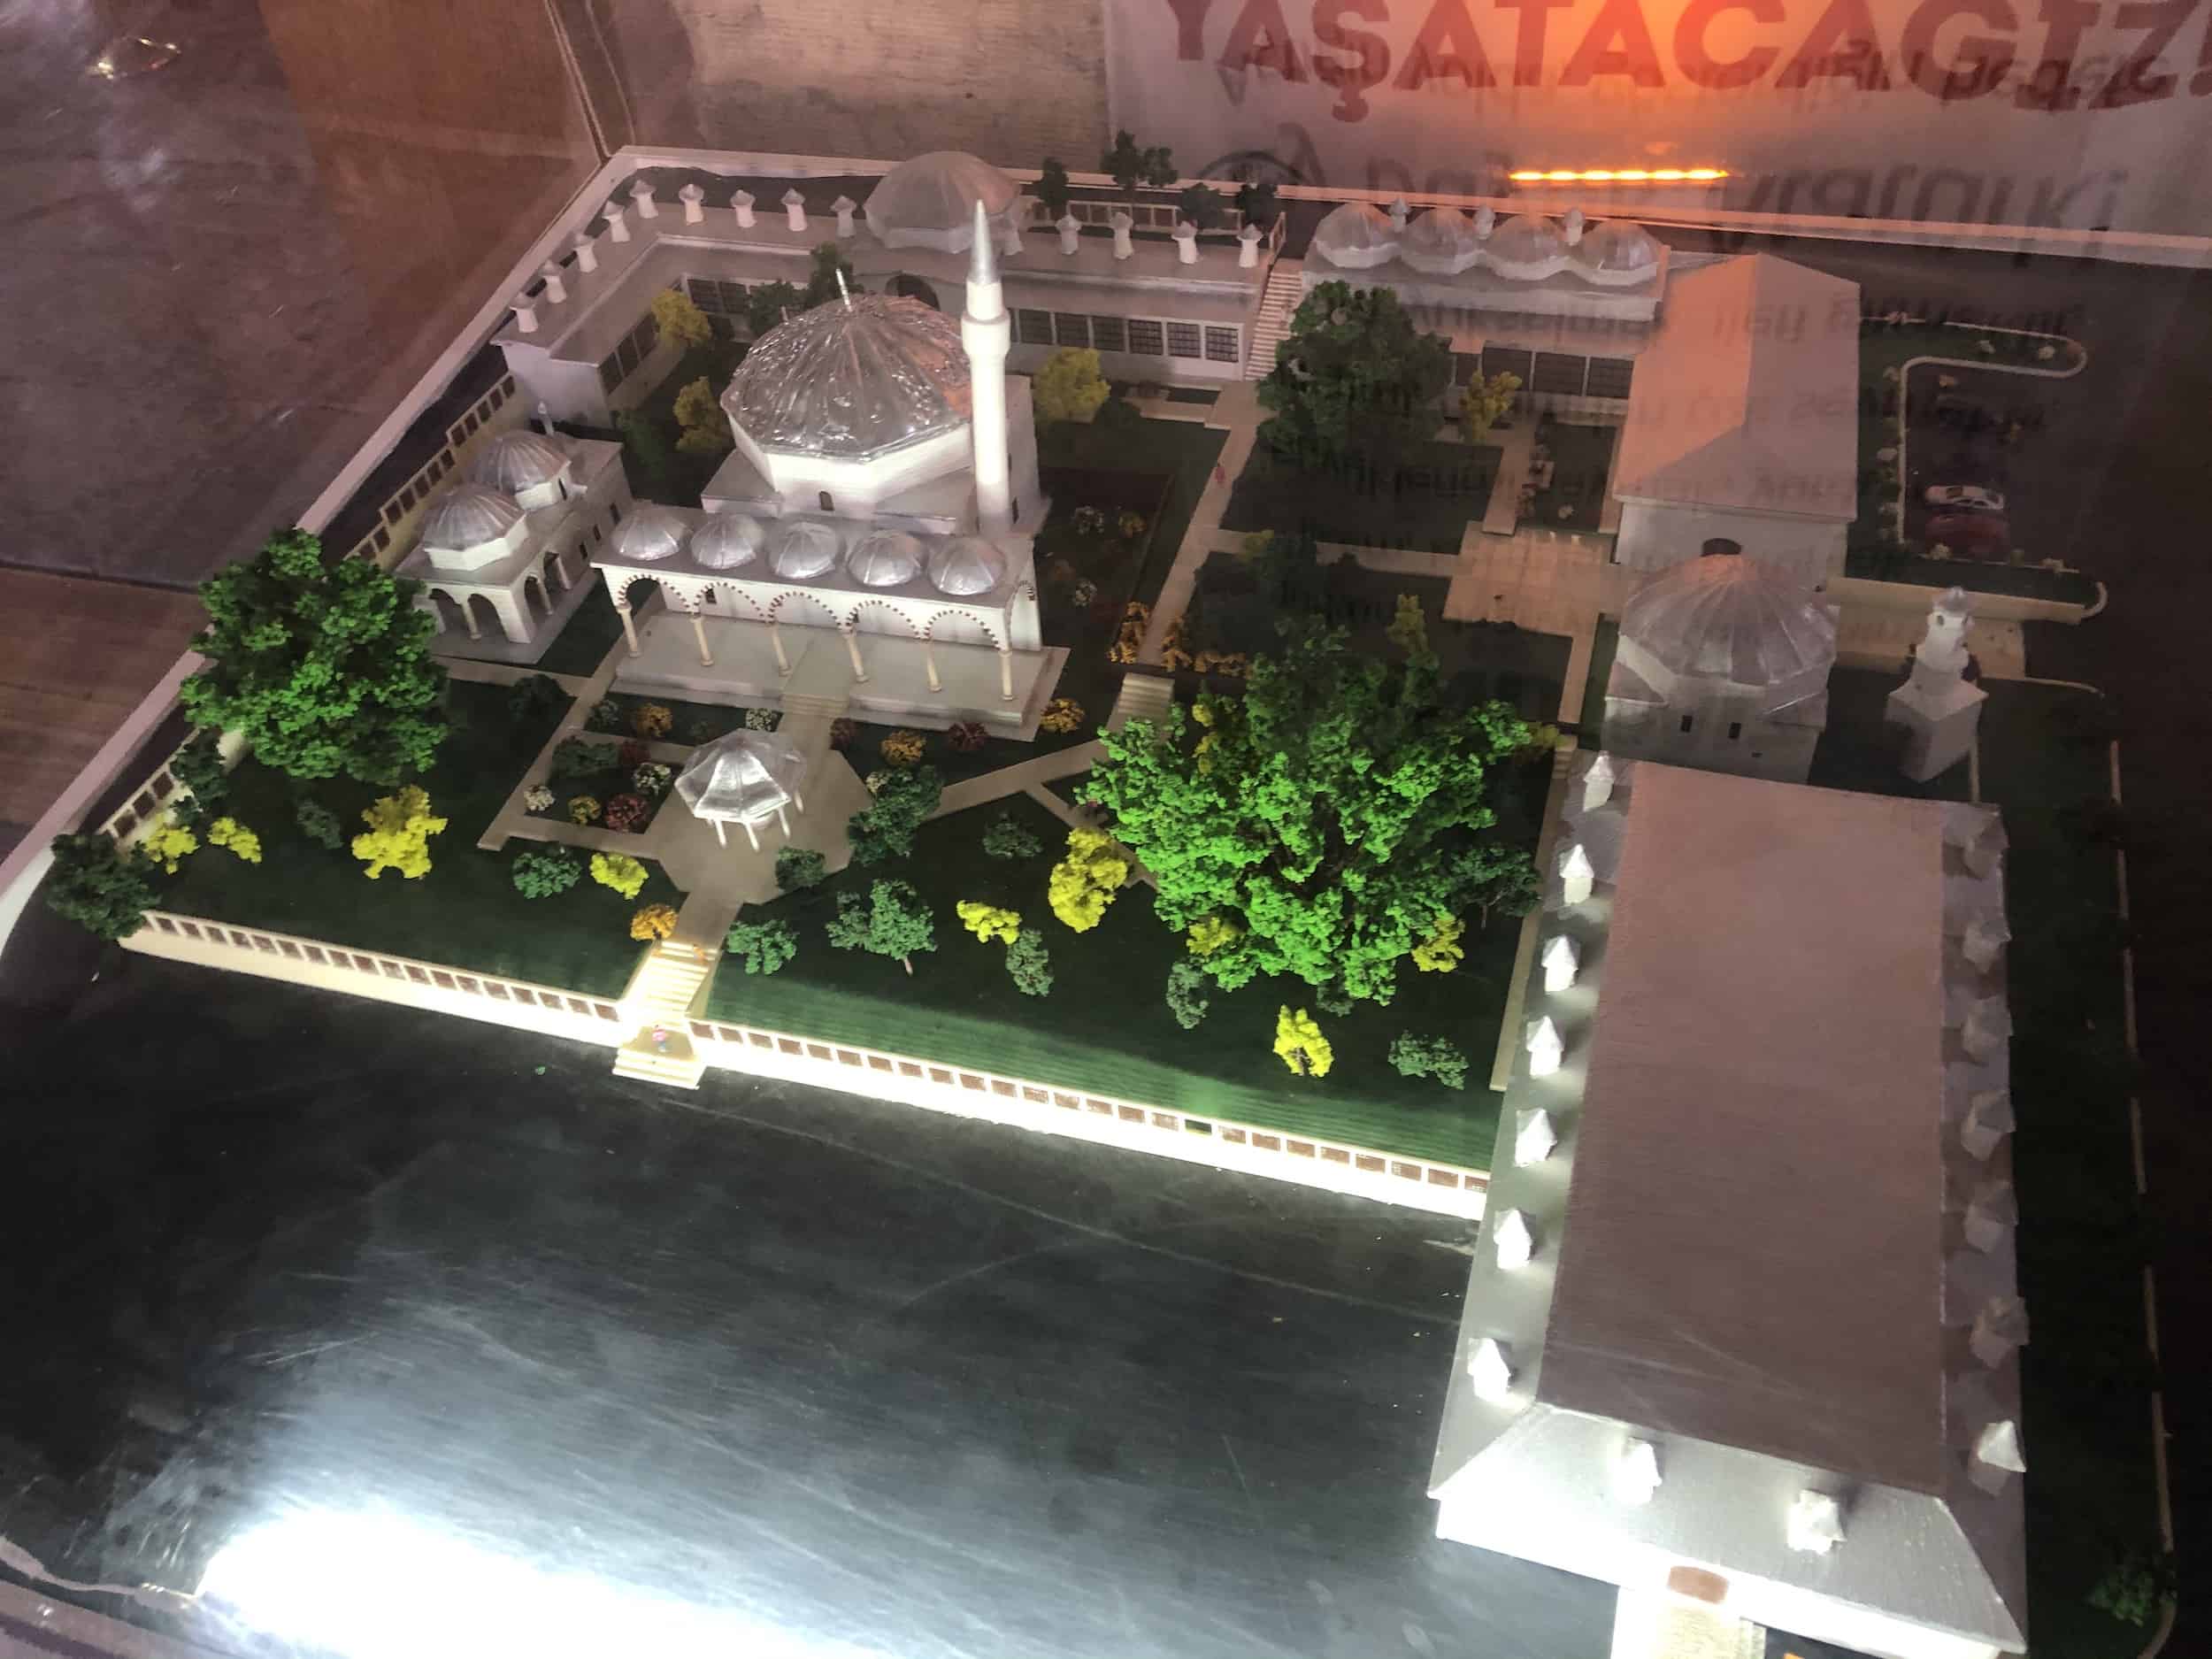 Scale model of the Kurşunlu Complex in Odunpazarı, Eskişehir, Turkey